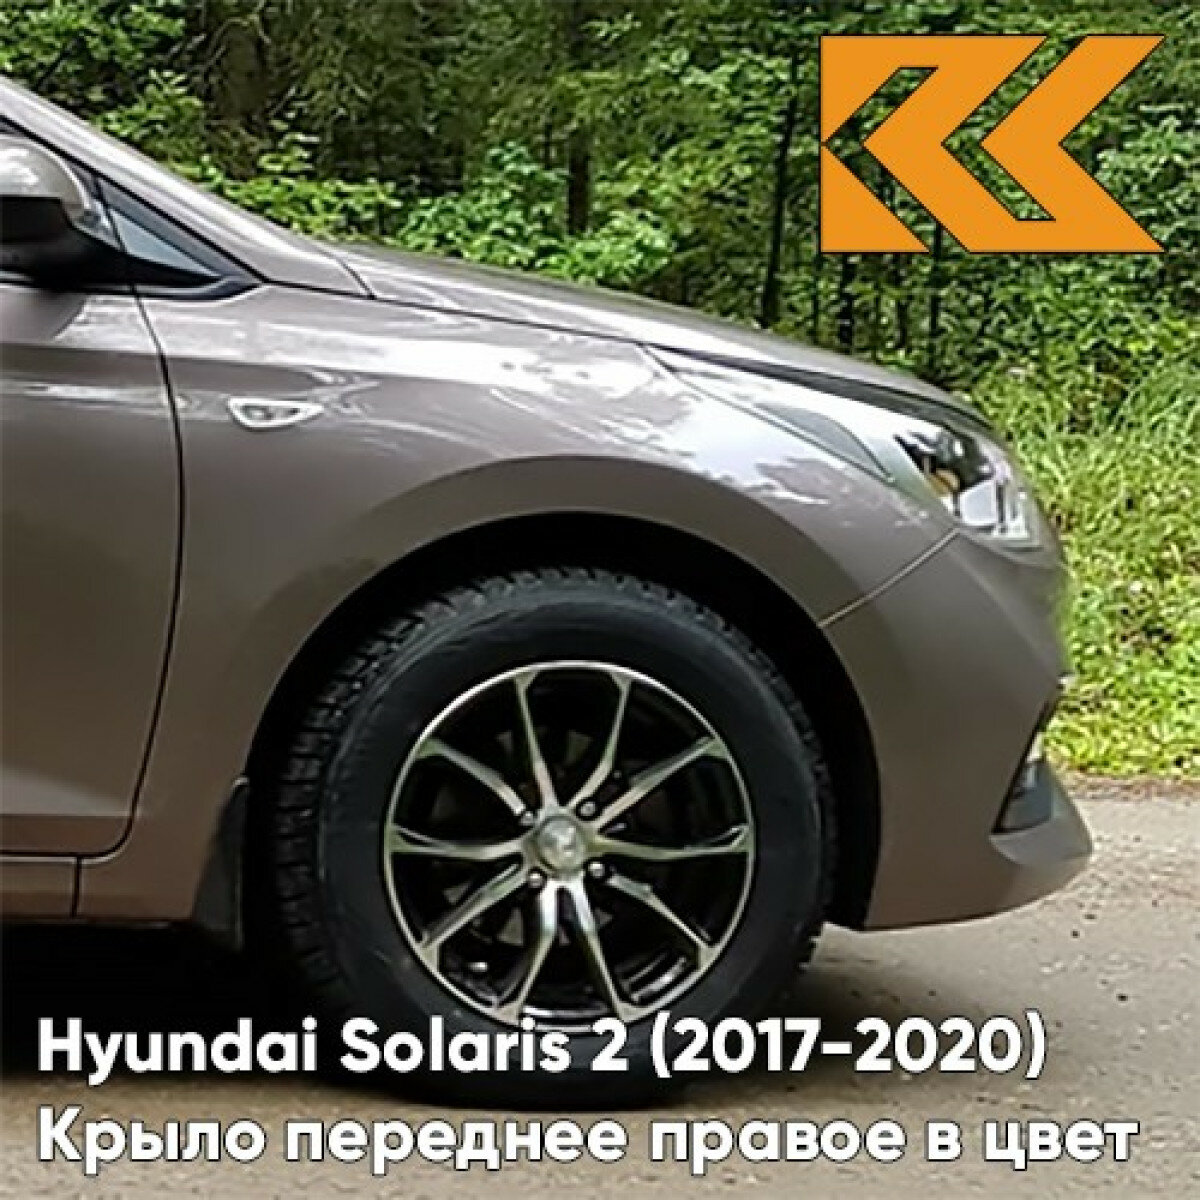 Крыло переднее правое в цвет Hyundai Solaris 2 Хендай Солярис S4N - SIENNA BROWN - Коричневый